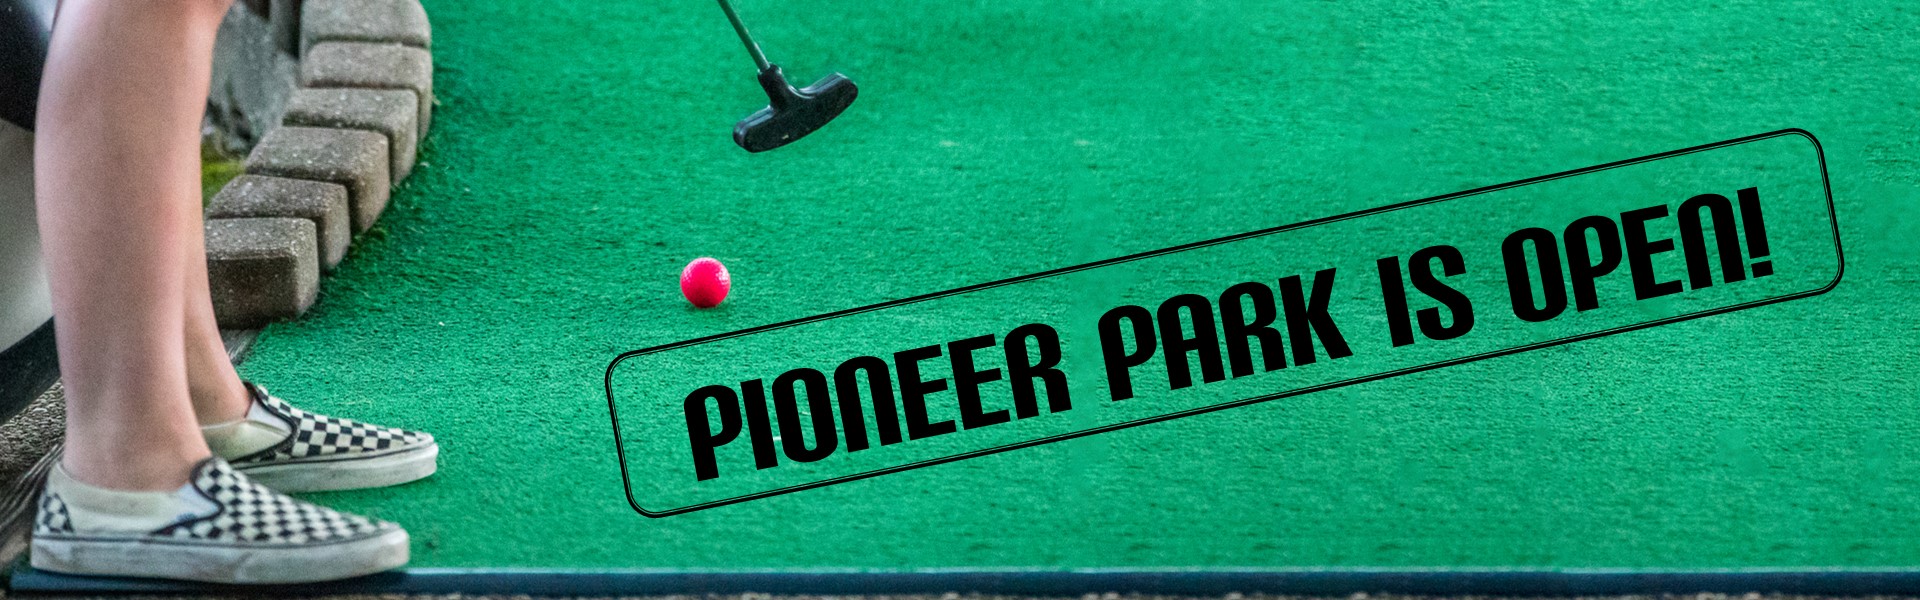 Pioneer Park is open